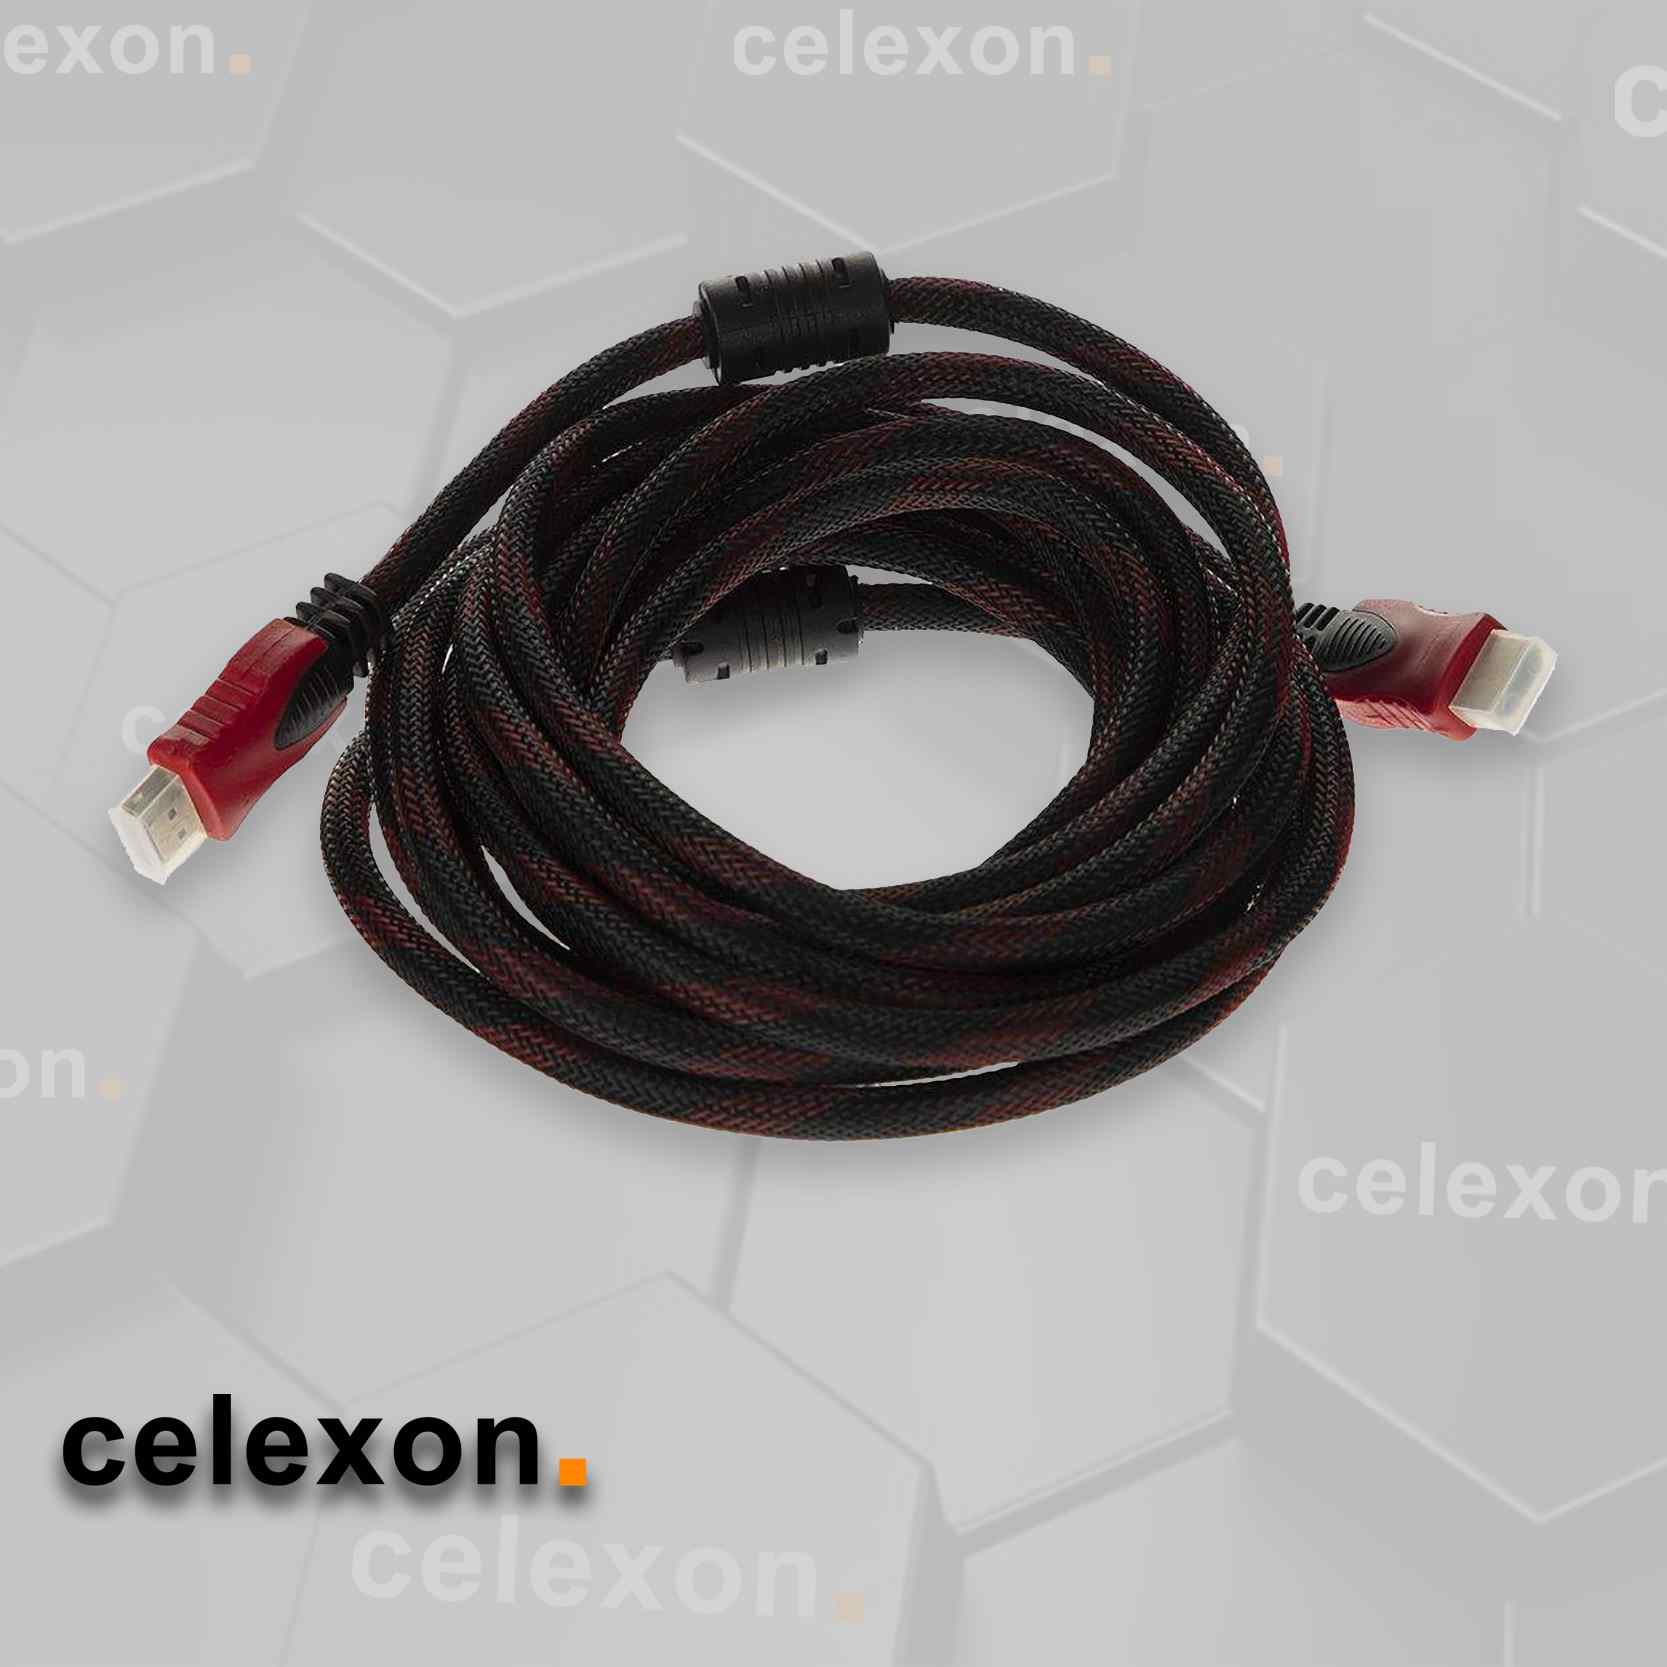 CE1805 HDMI Cable CE1805